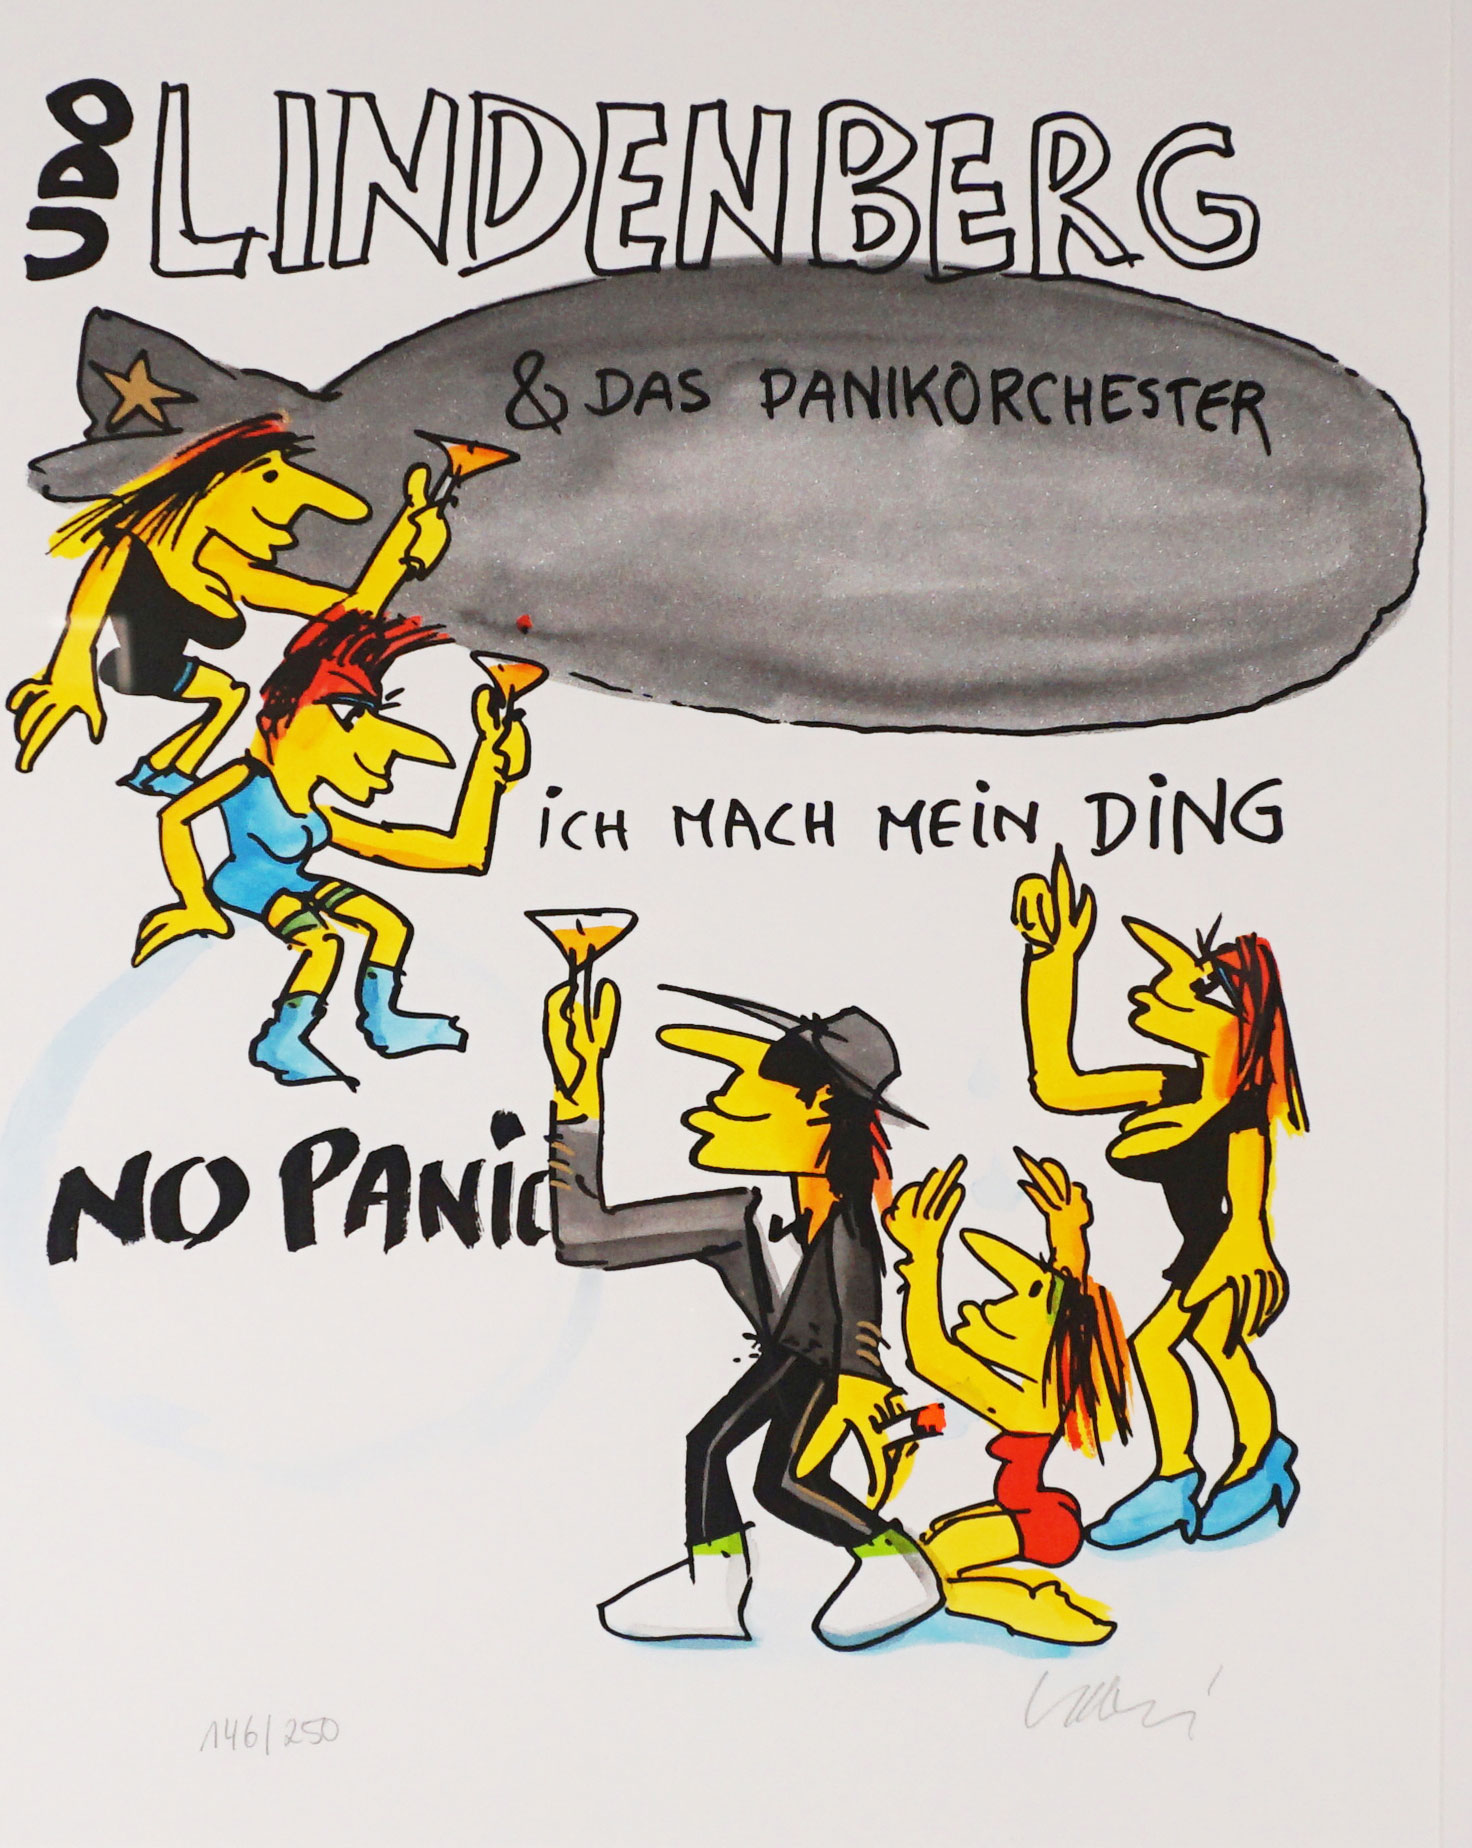 Udo Lindenberg "Zeppelin - Ich mach mein Ding"